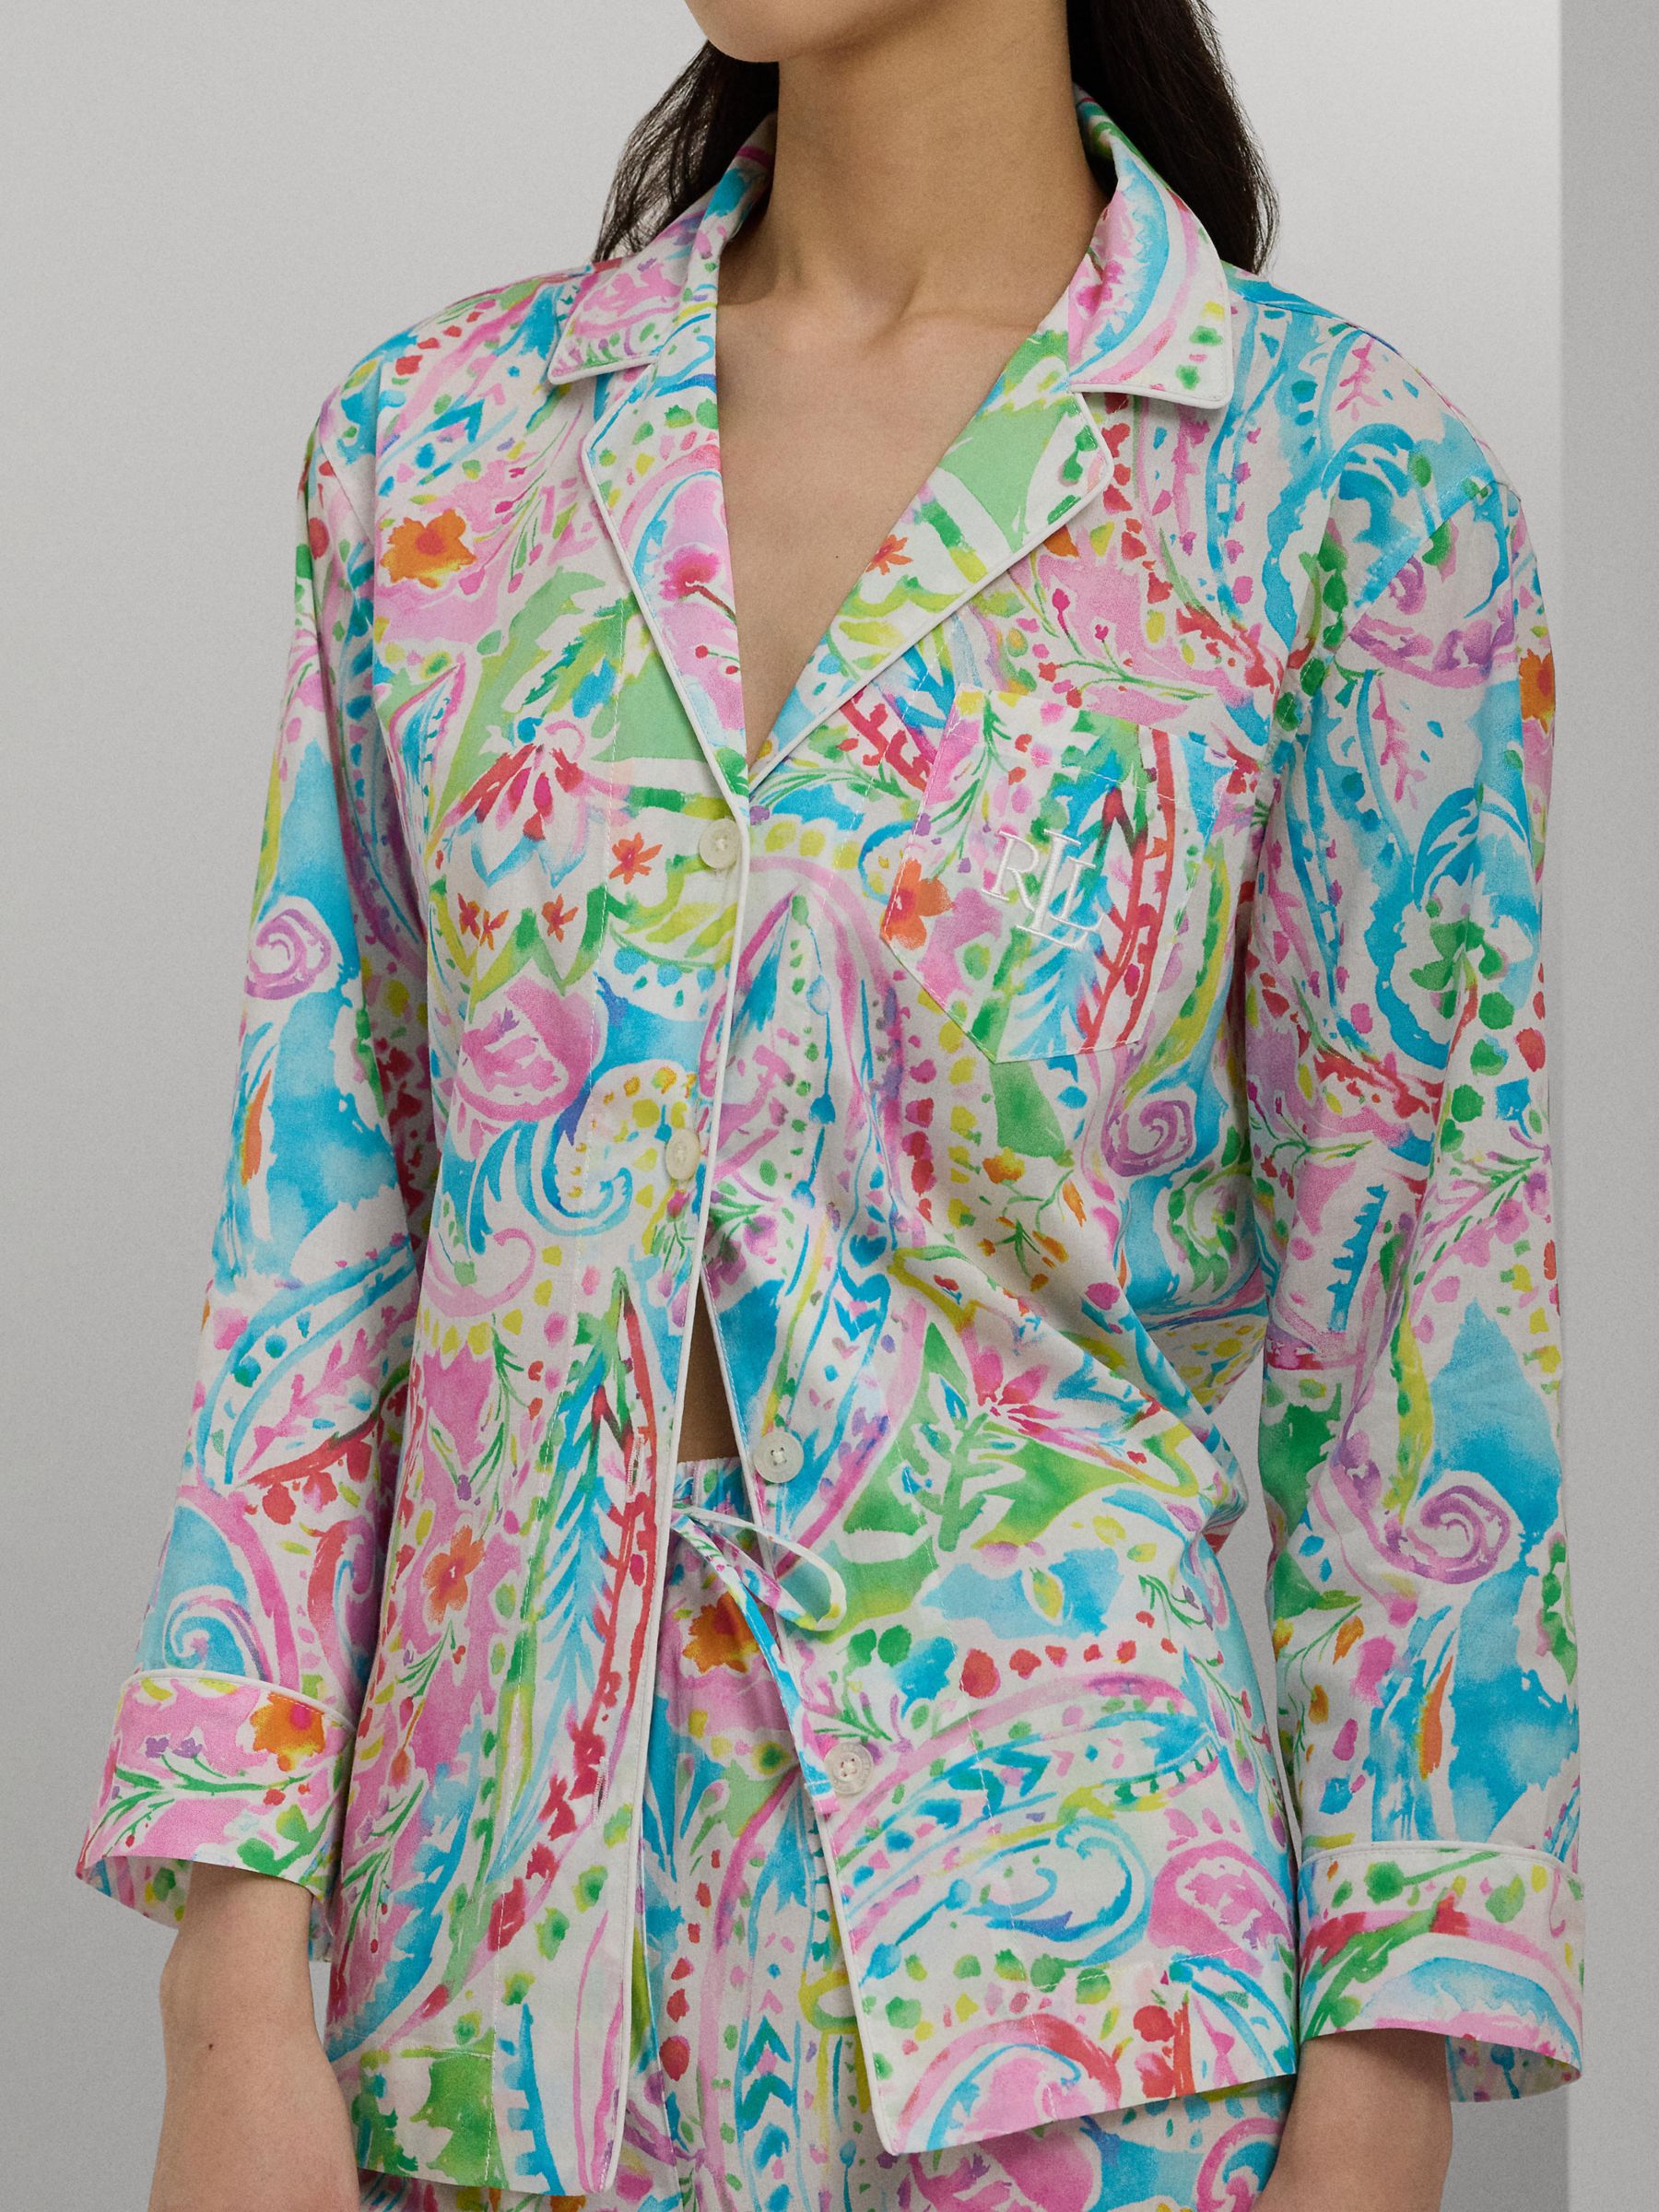 Buy Lauren Ralph Lauren 3/4 Length Pyjamas Online at johnlewis.com